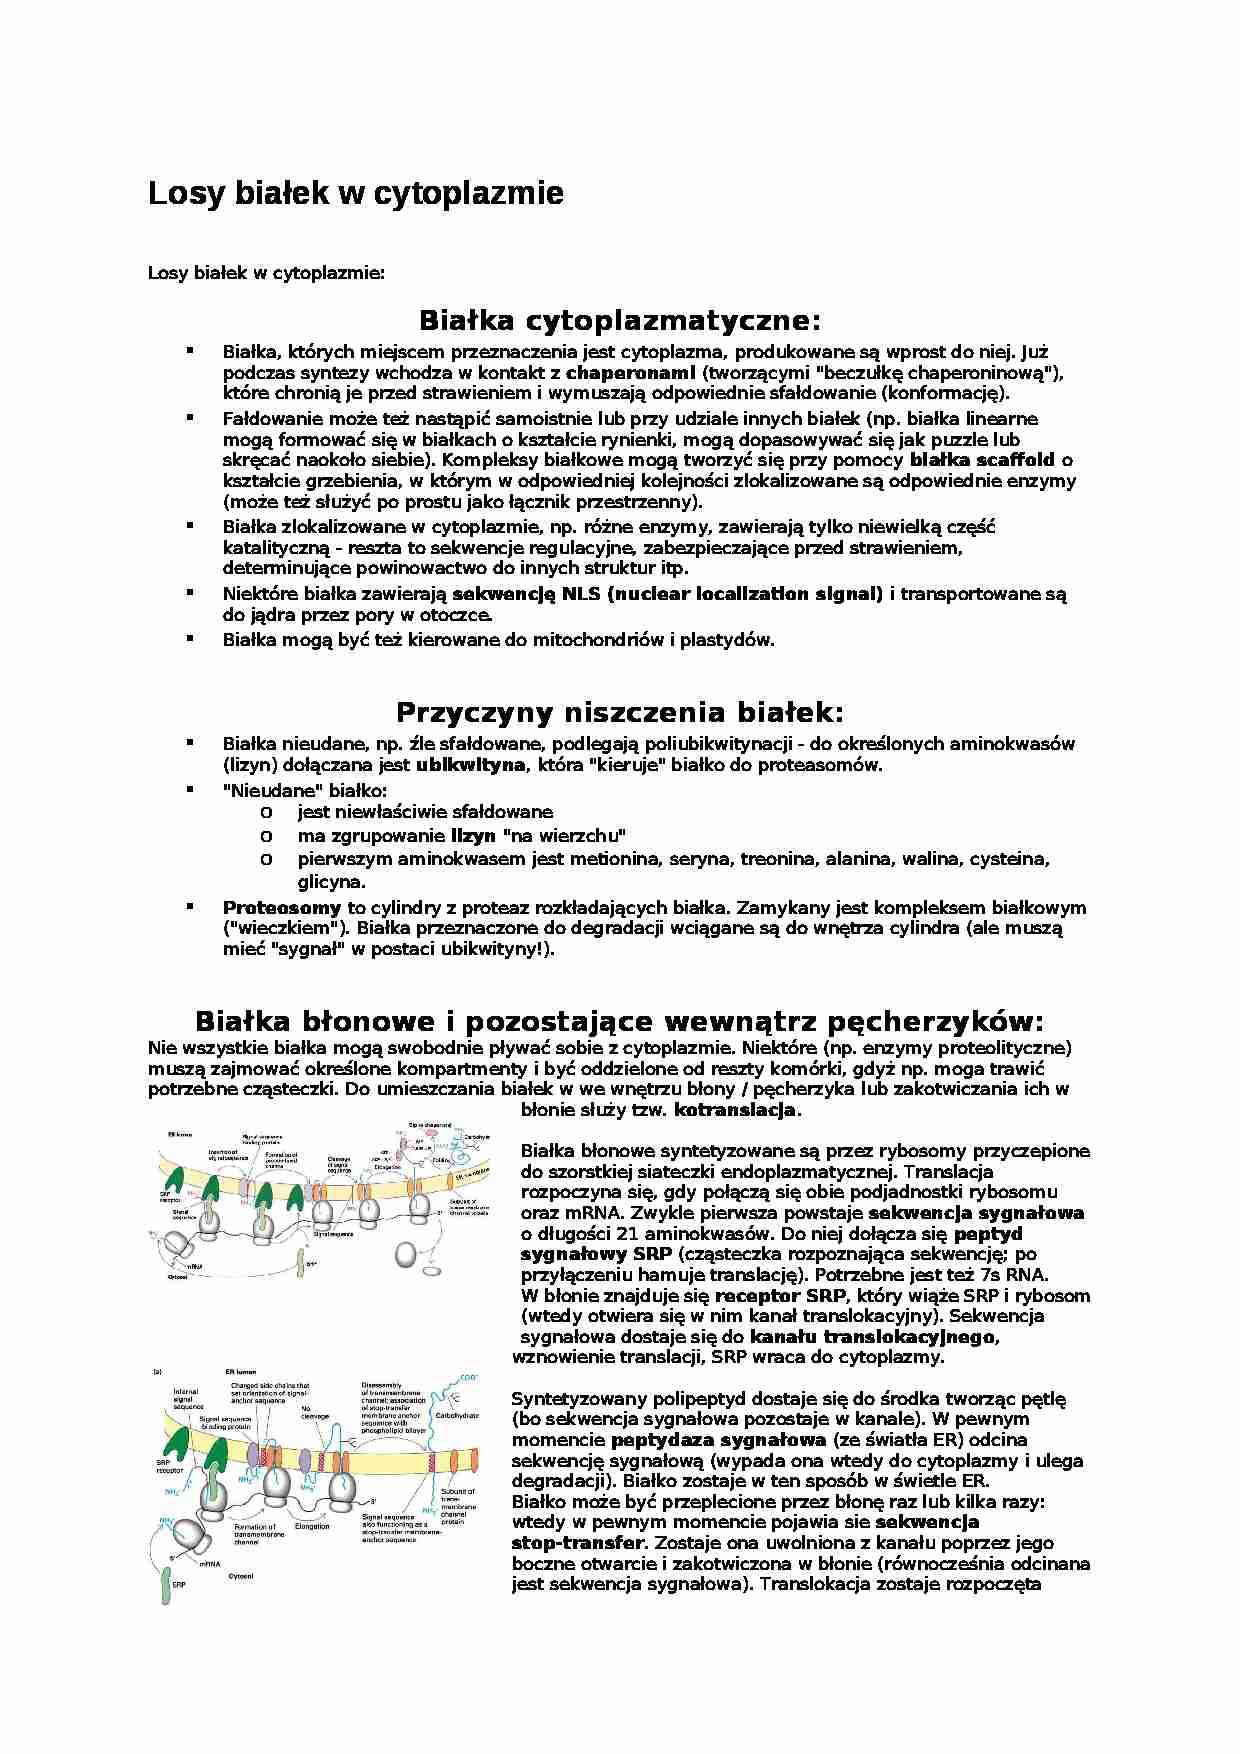 Losy białek w cytoplazmie-opracowanie - strona 1